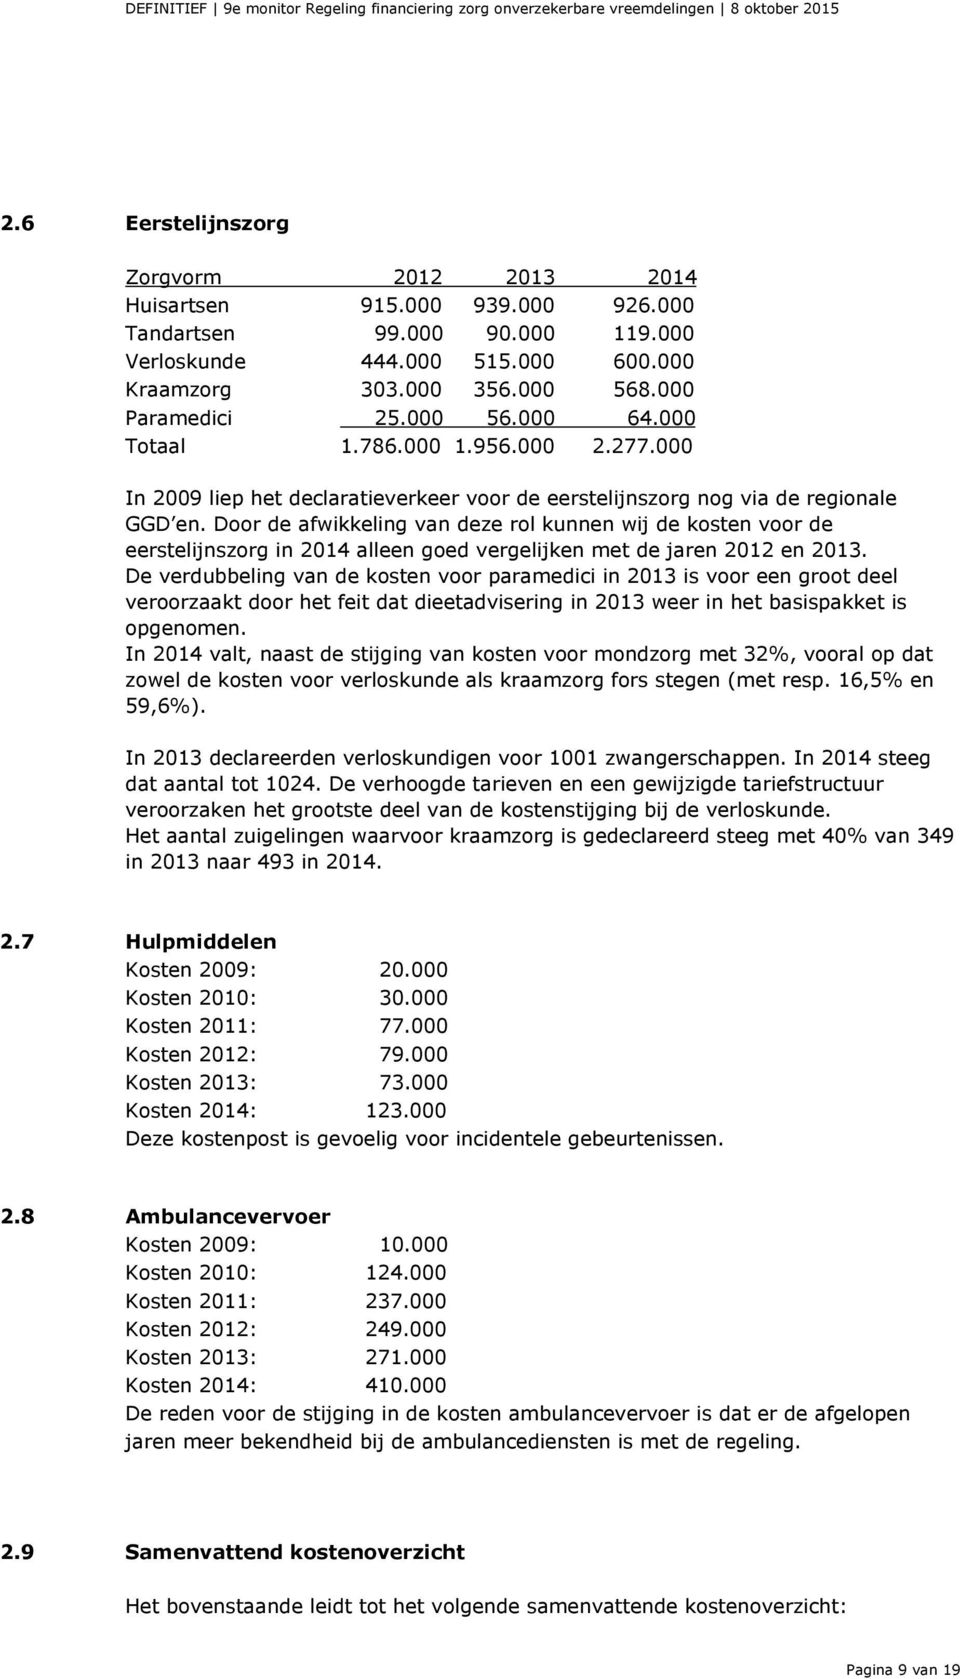 Door de afwikkeling van deze rol kunnen wij de kosten voor de eerstelijnszorg in 2014 alleen goed vergelijken met de jaren 2012 en 2013.